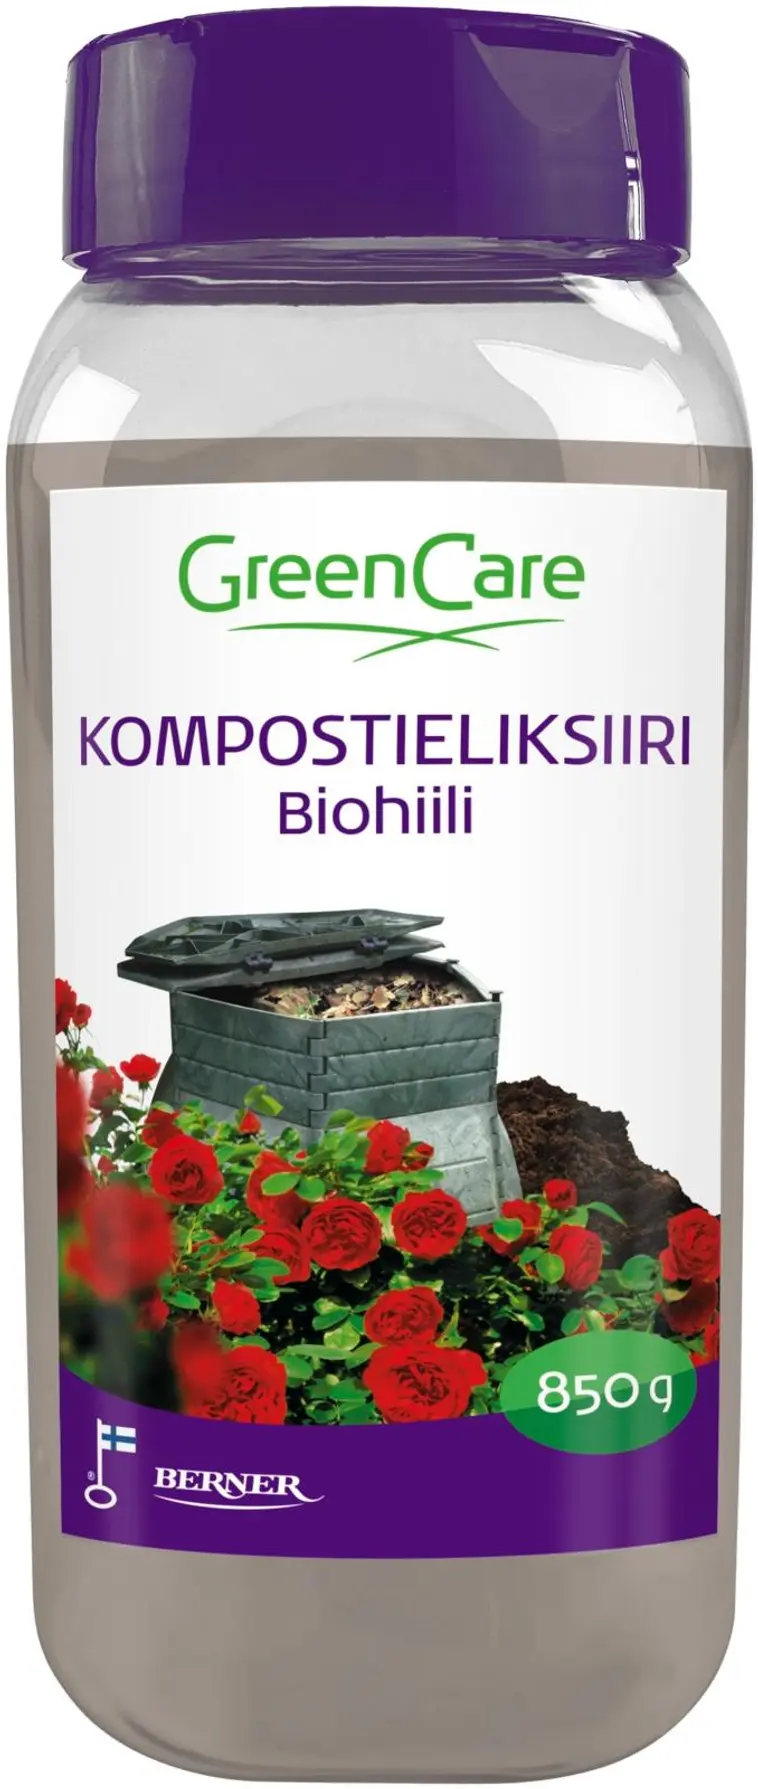 Greencare kompostieliksiiri biohiili 850 g